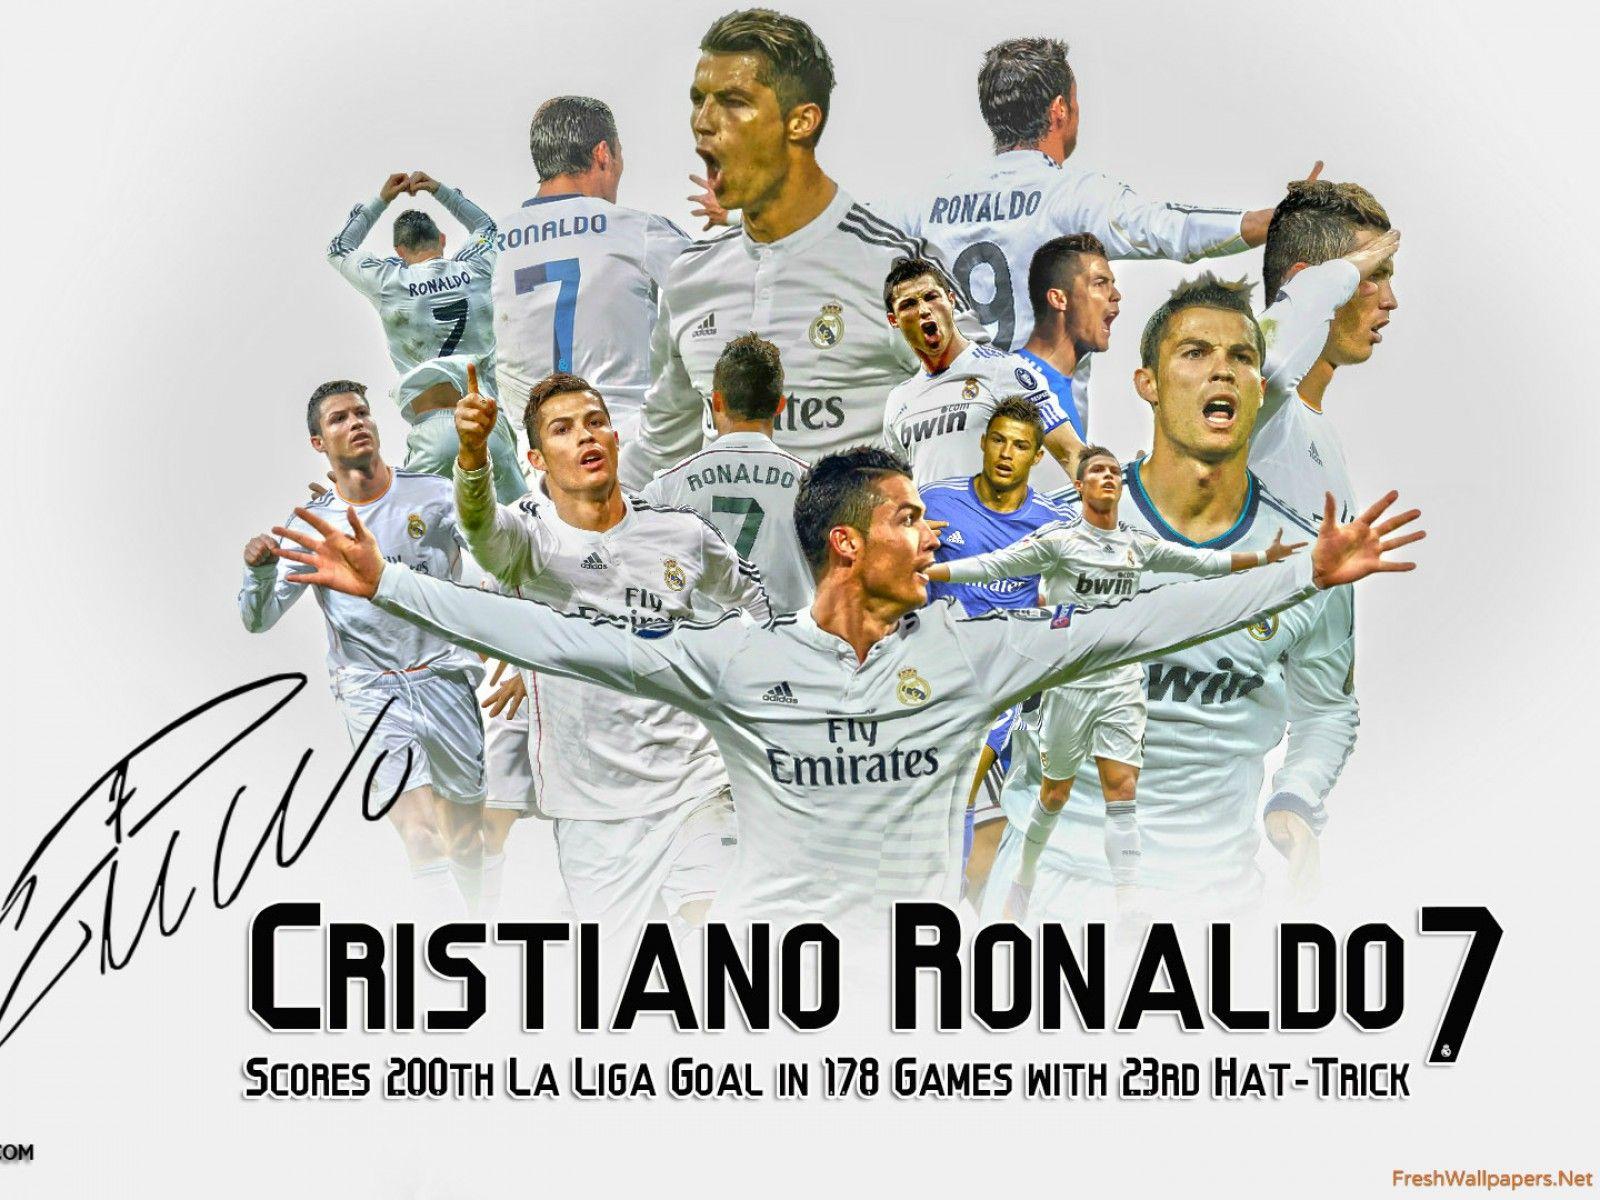 Cristiano Ronaldo La Liga Goal Scoring Record wallpaper